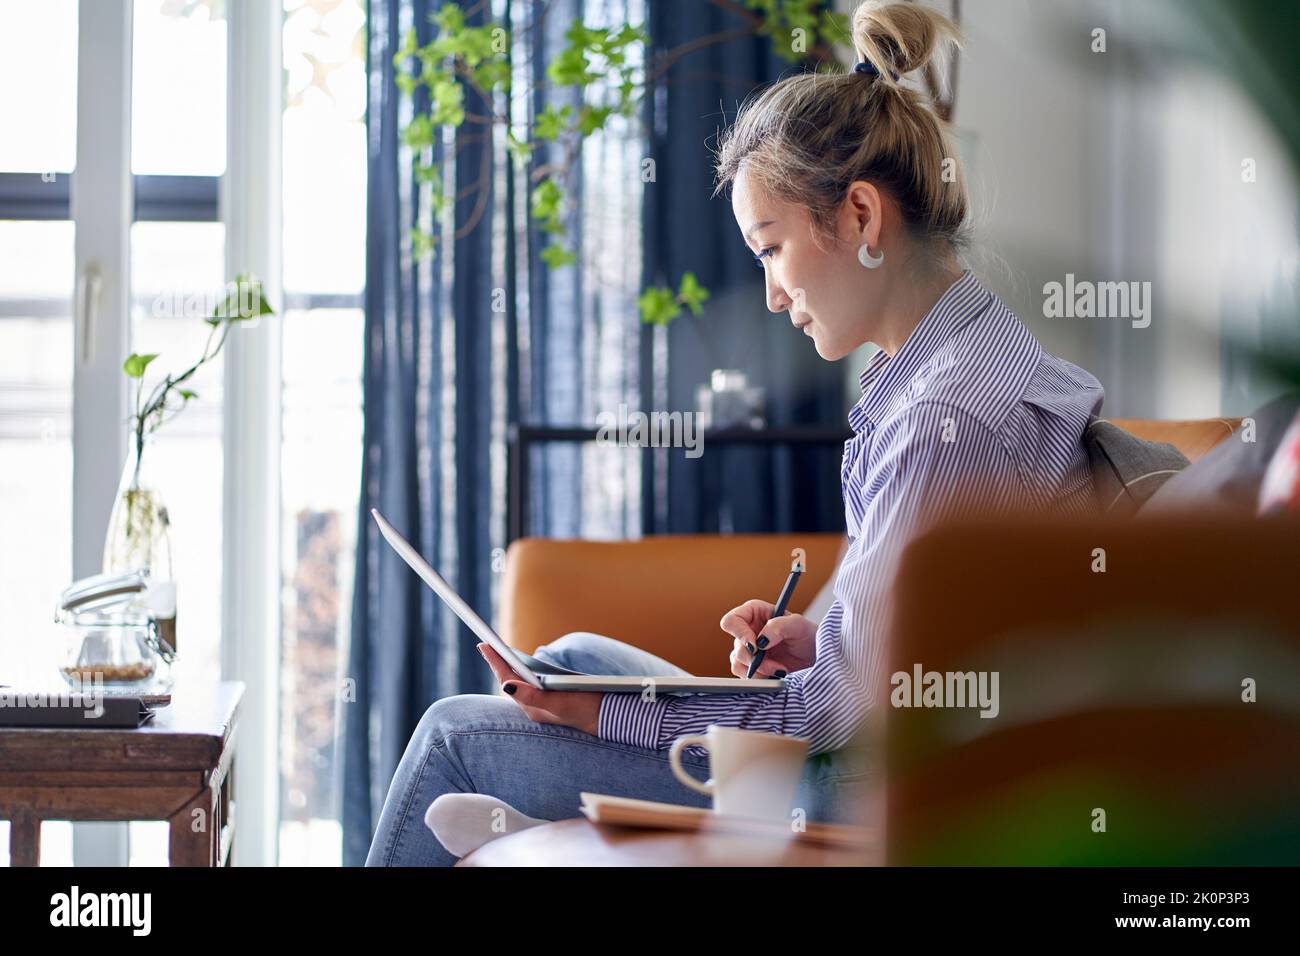 femme asiatique professionnelle mature travaillant sur un document papier de la maison en utilisant un ordinateur portable vue latérale Banque D'Images